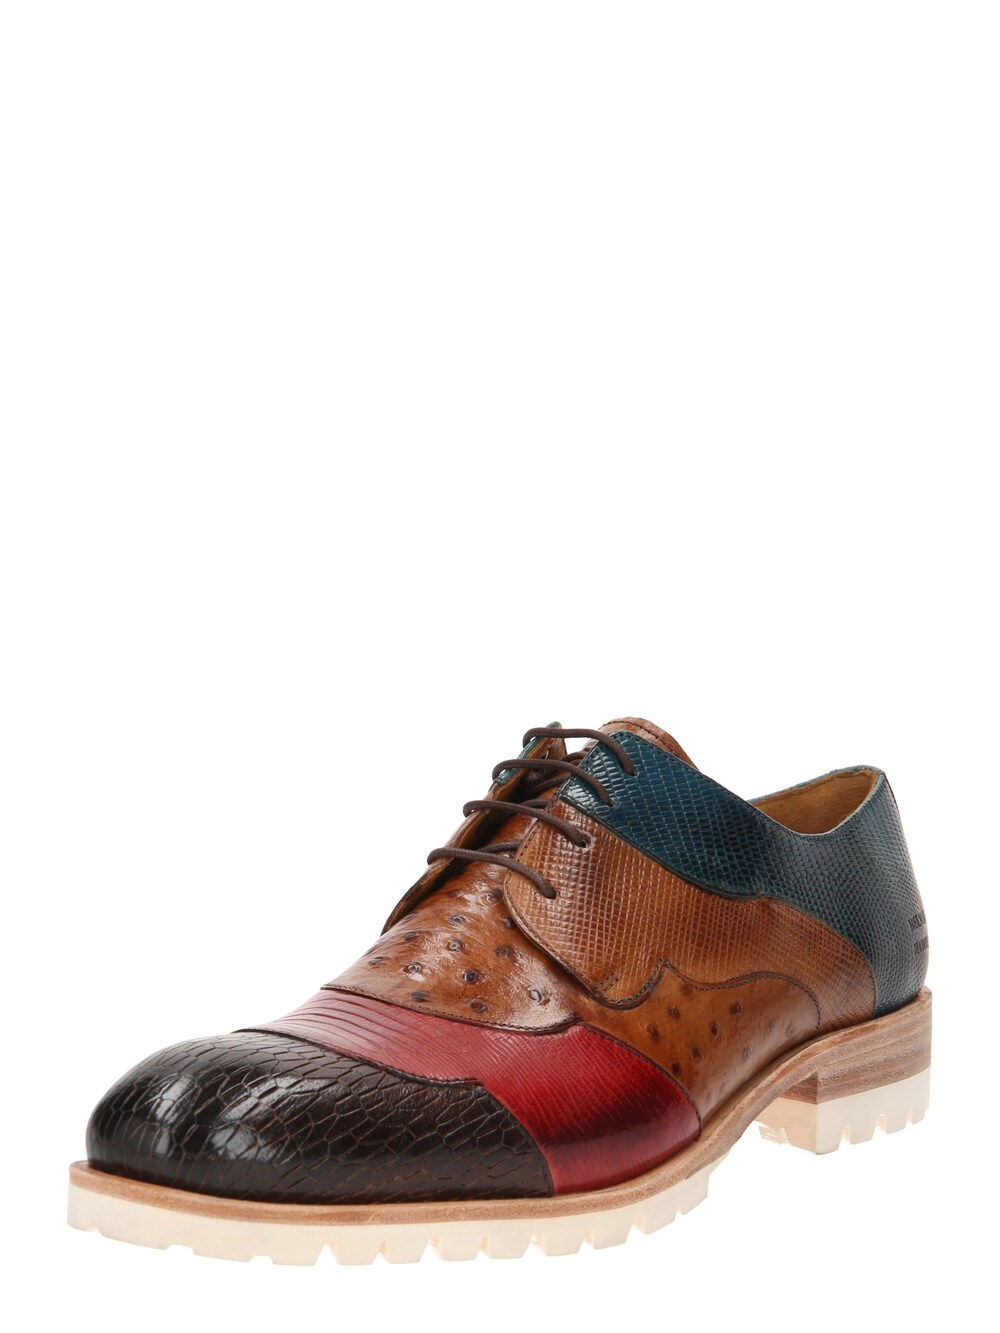 Обувь на шнуровке MELVIN & HAMILTON Patrick, смешанные цвета цена и фото